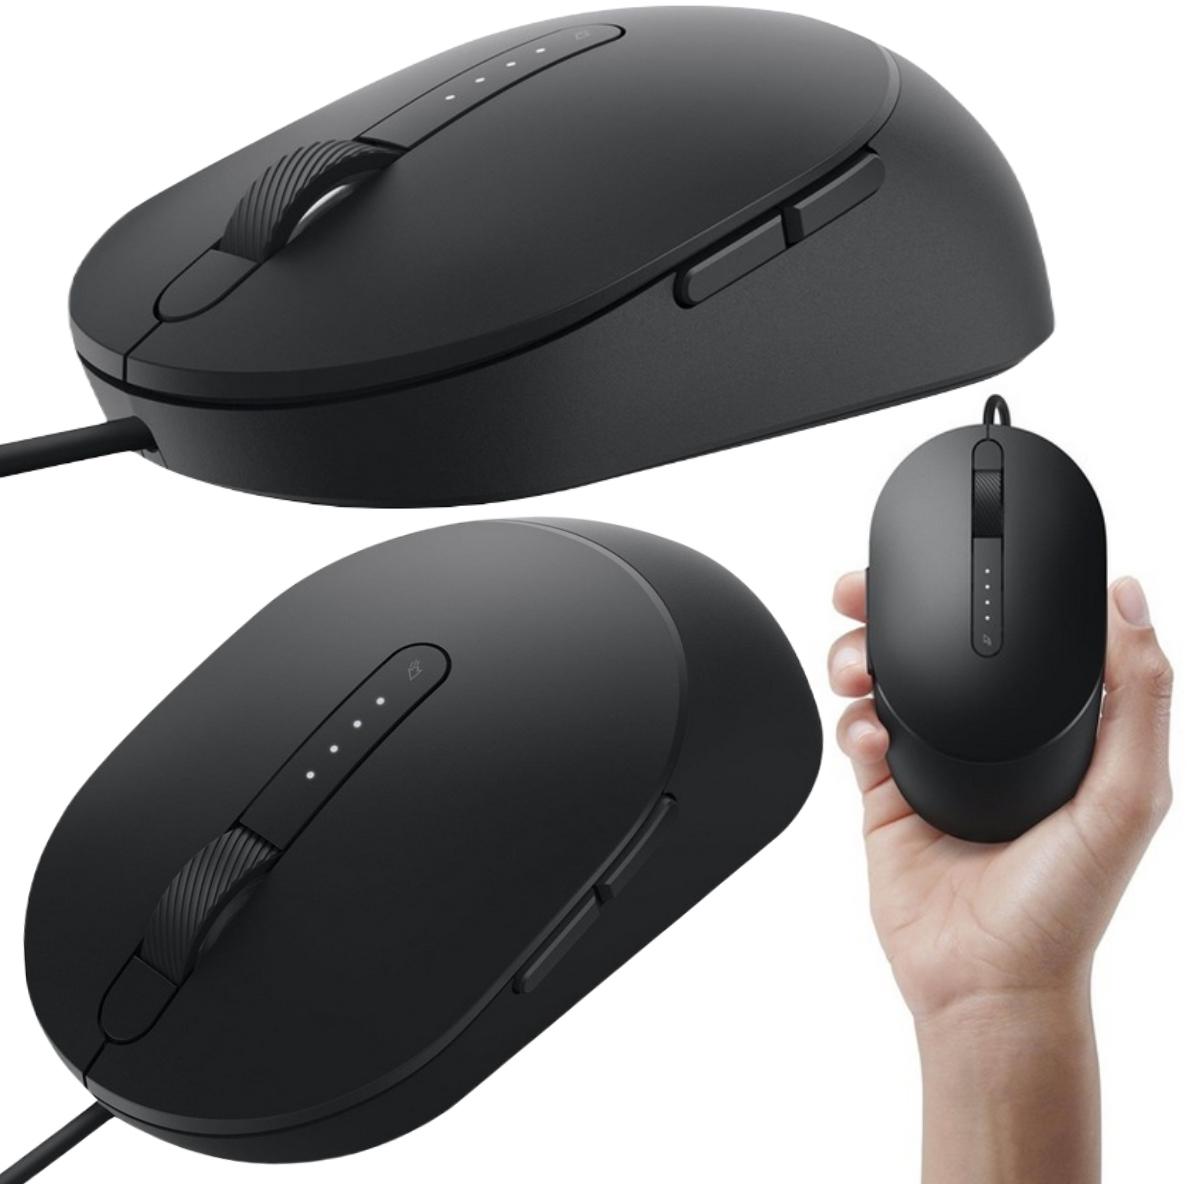 Laserowa mysz przewodowa Dell MS3220 Laser Wired Mouse - najważniejsze cechy urządzenia: